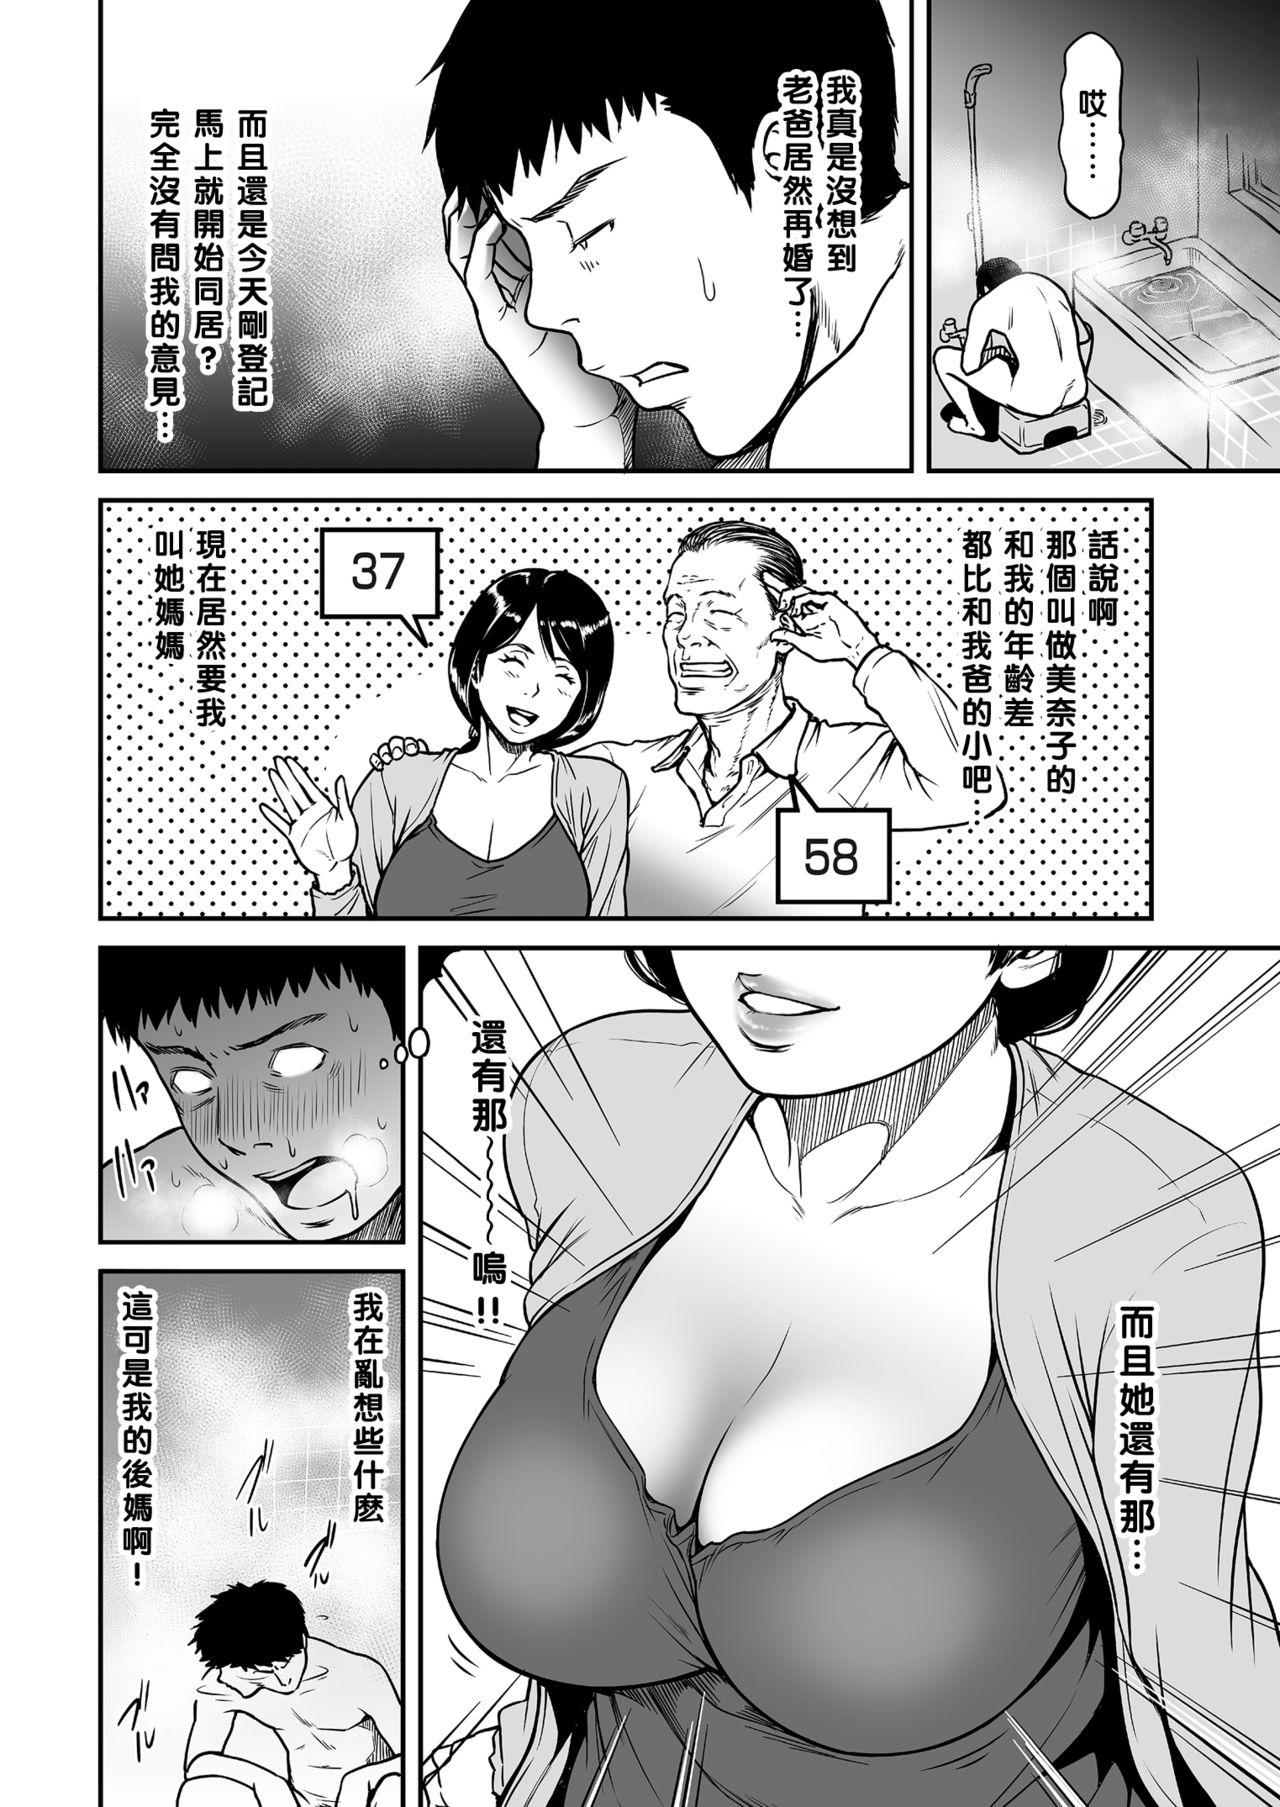 Porno Kaa-san ga, Onna no Yosa o Oshiete Ageru. Edging - Page 2